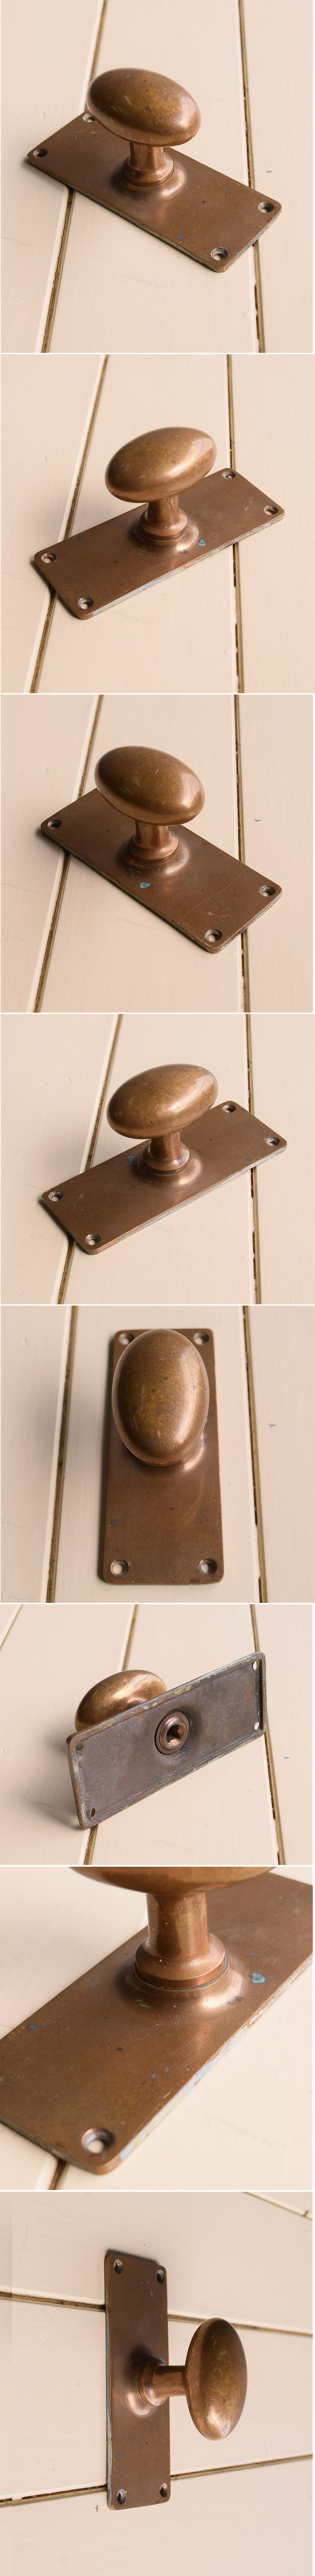 イギリス アンティーク 真鍮製 ドアノブ 建具金物 11154